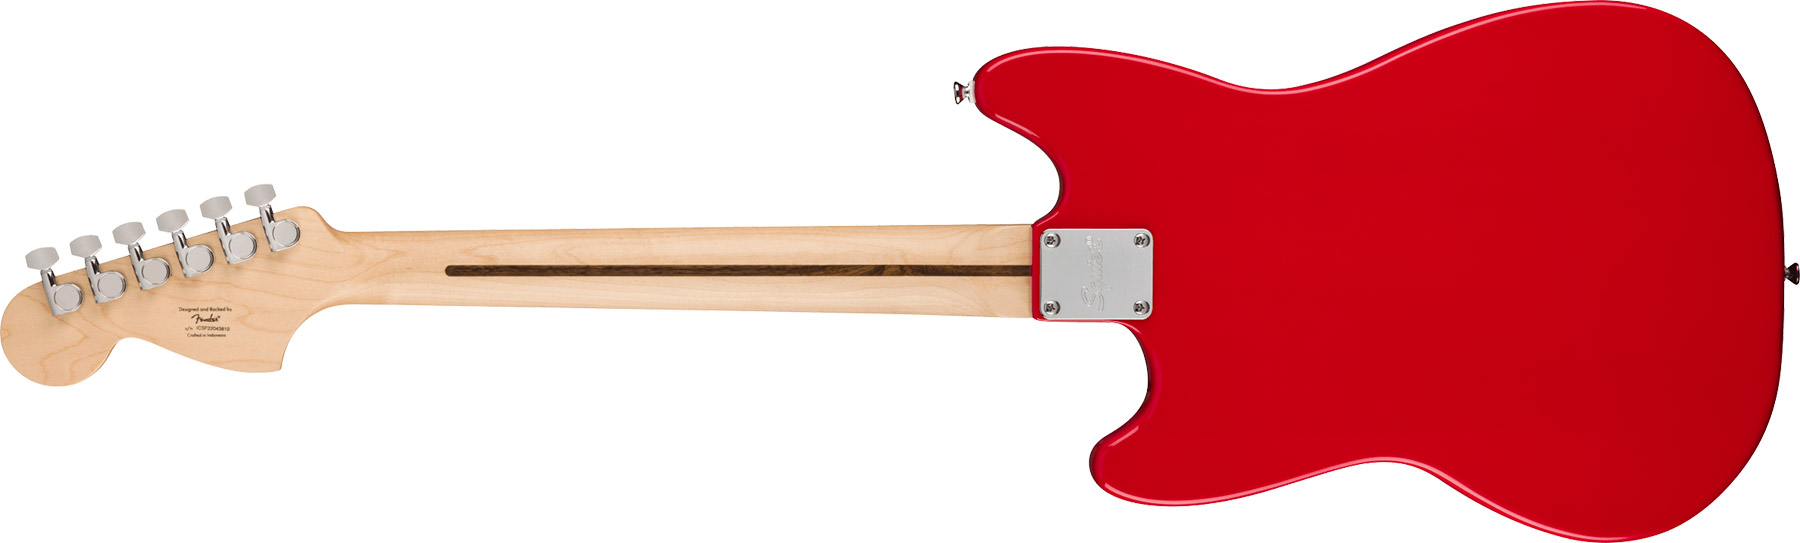 Squier Mustang Sonic 2s Ht Mn - Torino Red - Retro-rock elektrische gitaar - Variation 1